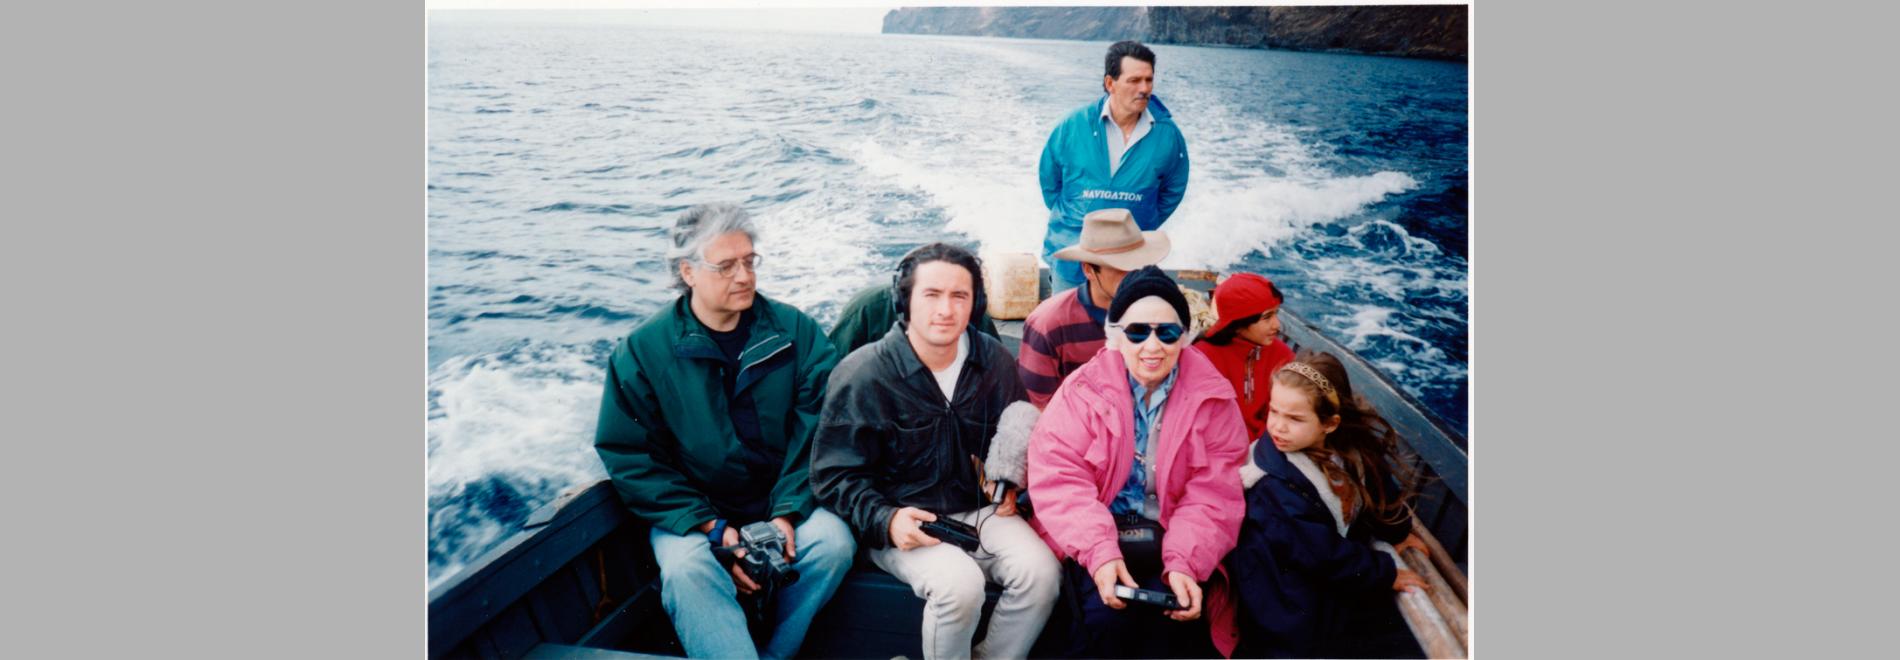 La isla de Robinson Crusoe (Patricio Guzmán, 1999)